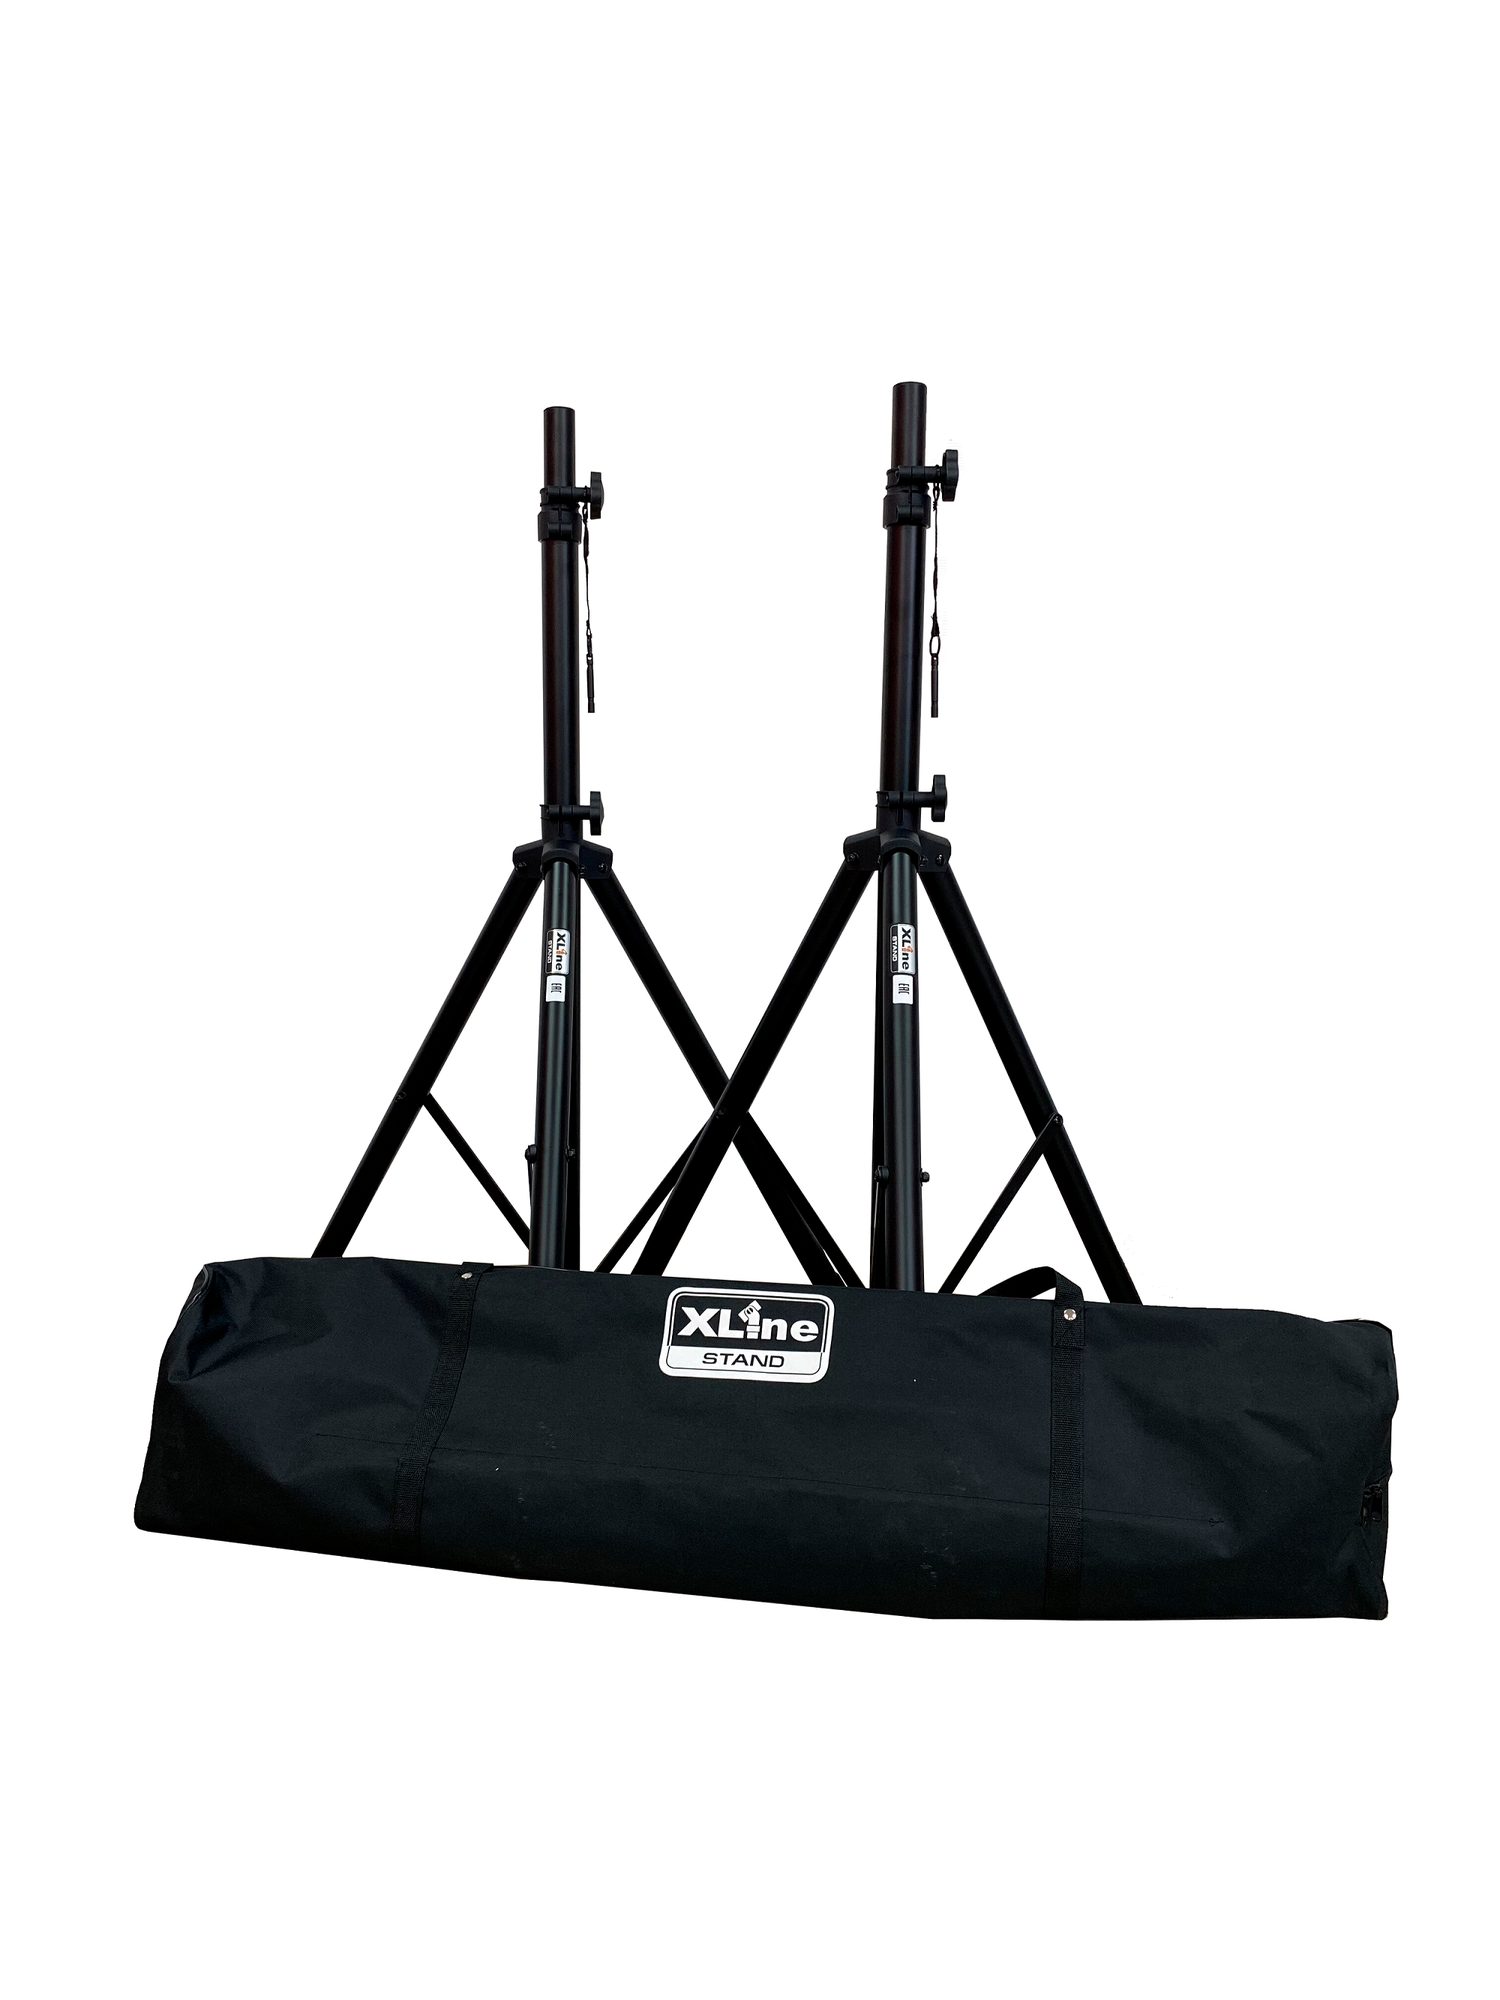 XLine Stand AS-8SET - комплект 2 стойки для акустических систем с сумкой-чехлом